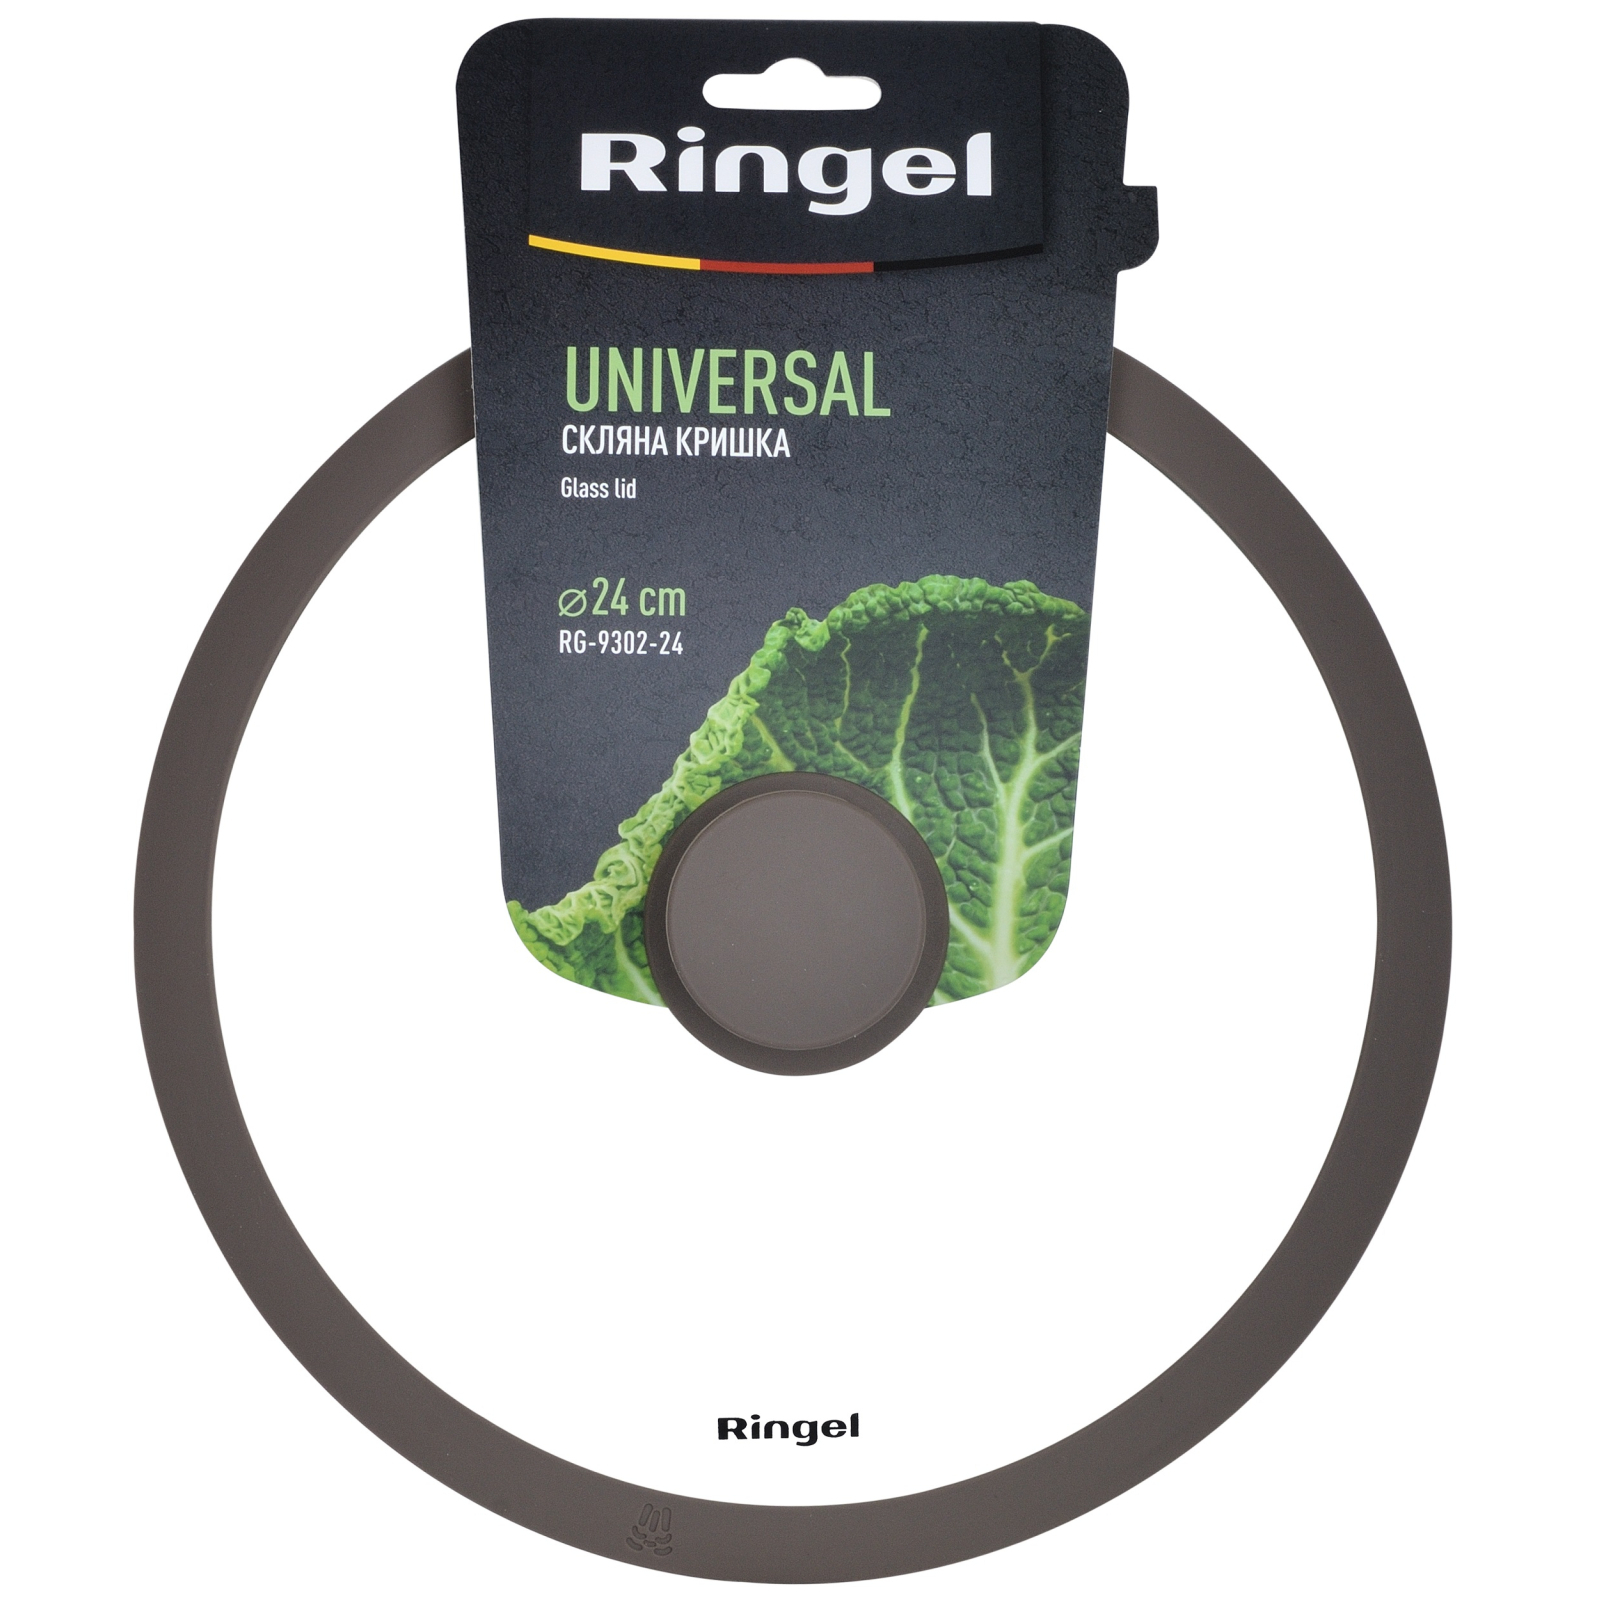 Крышка для посуды Ringel Universal silicone 26 см (RG-9302-26) изображение 3